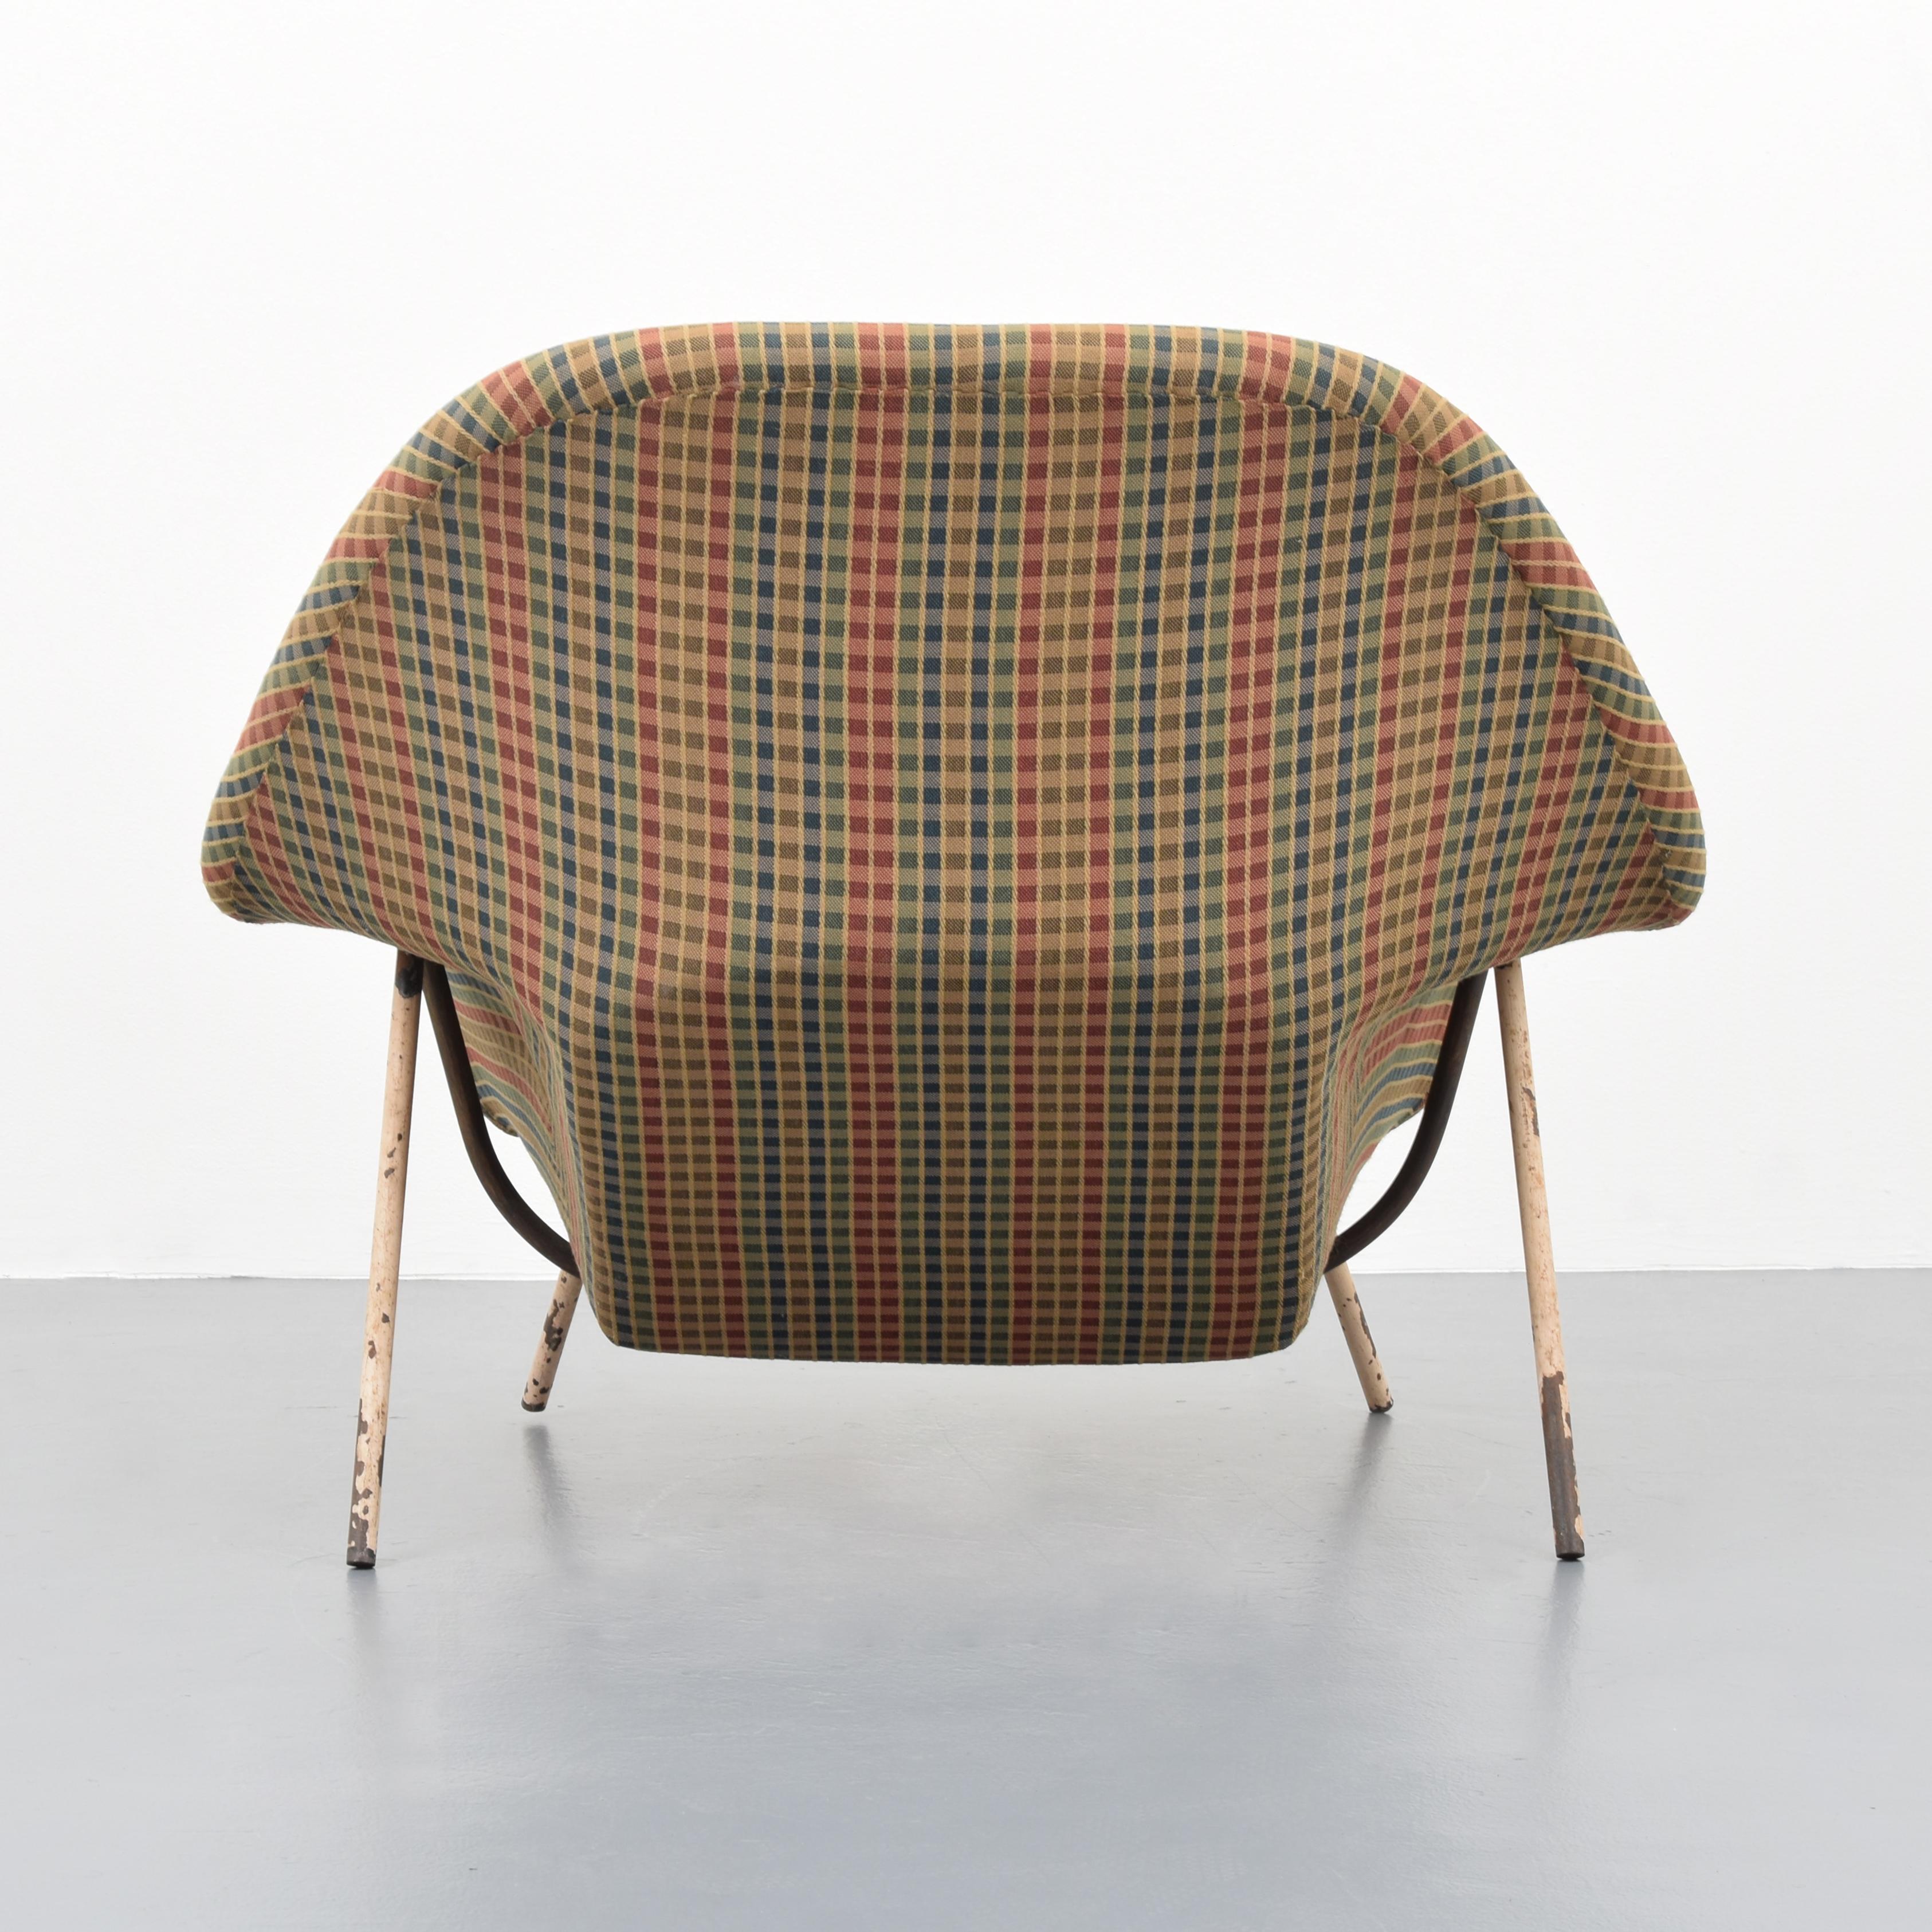 Steel Early Eero Saarinen “Womb” Chair For Sale